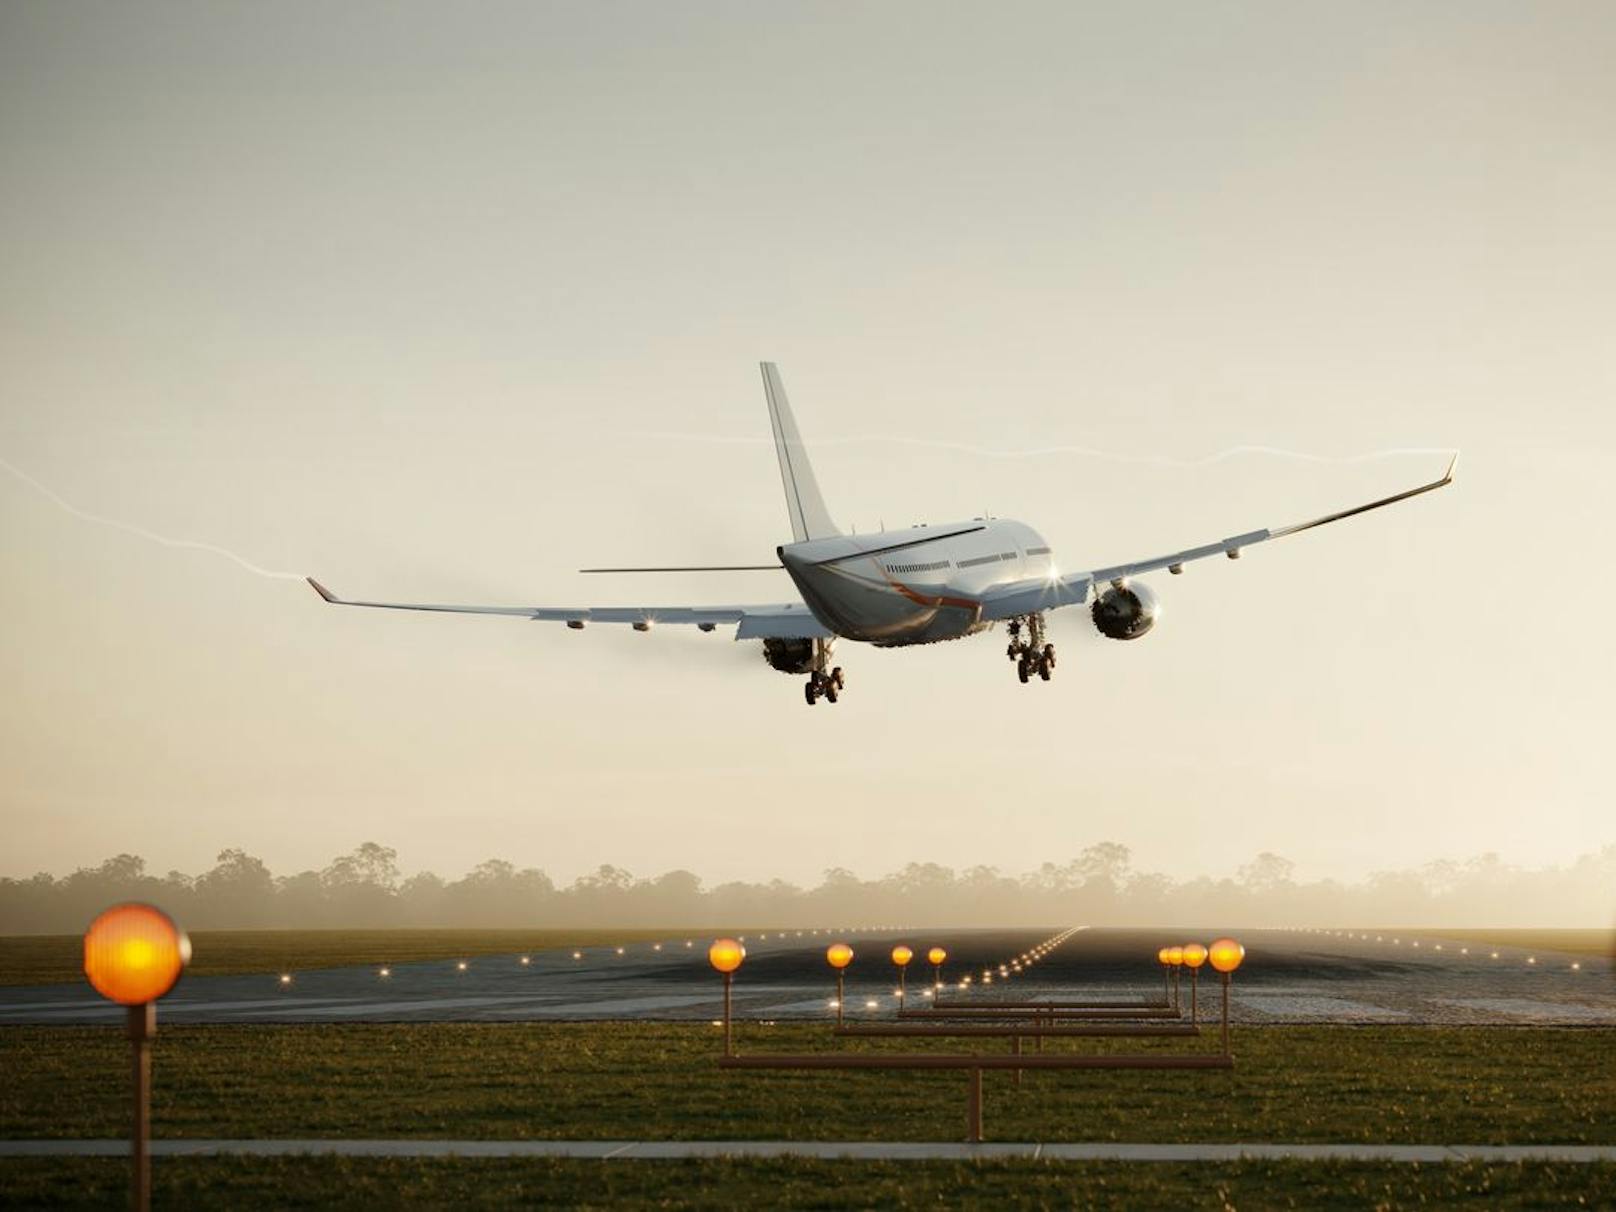 Flüge, für die eine Fluglinie die Start- und Landerechte beantragt hat, können innerhalb der EU nicht einfach abgesagt werden. Das zwinge Fluglinien zur Durchführung passagierloser Flüge.